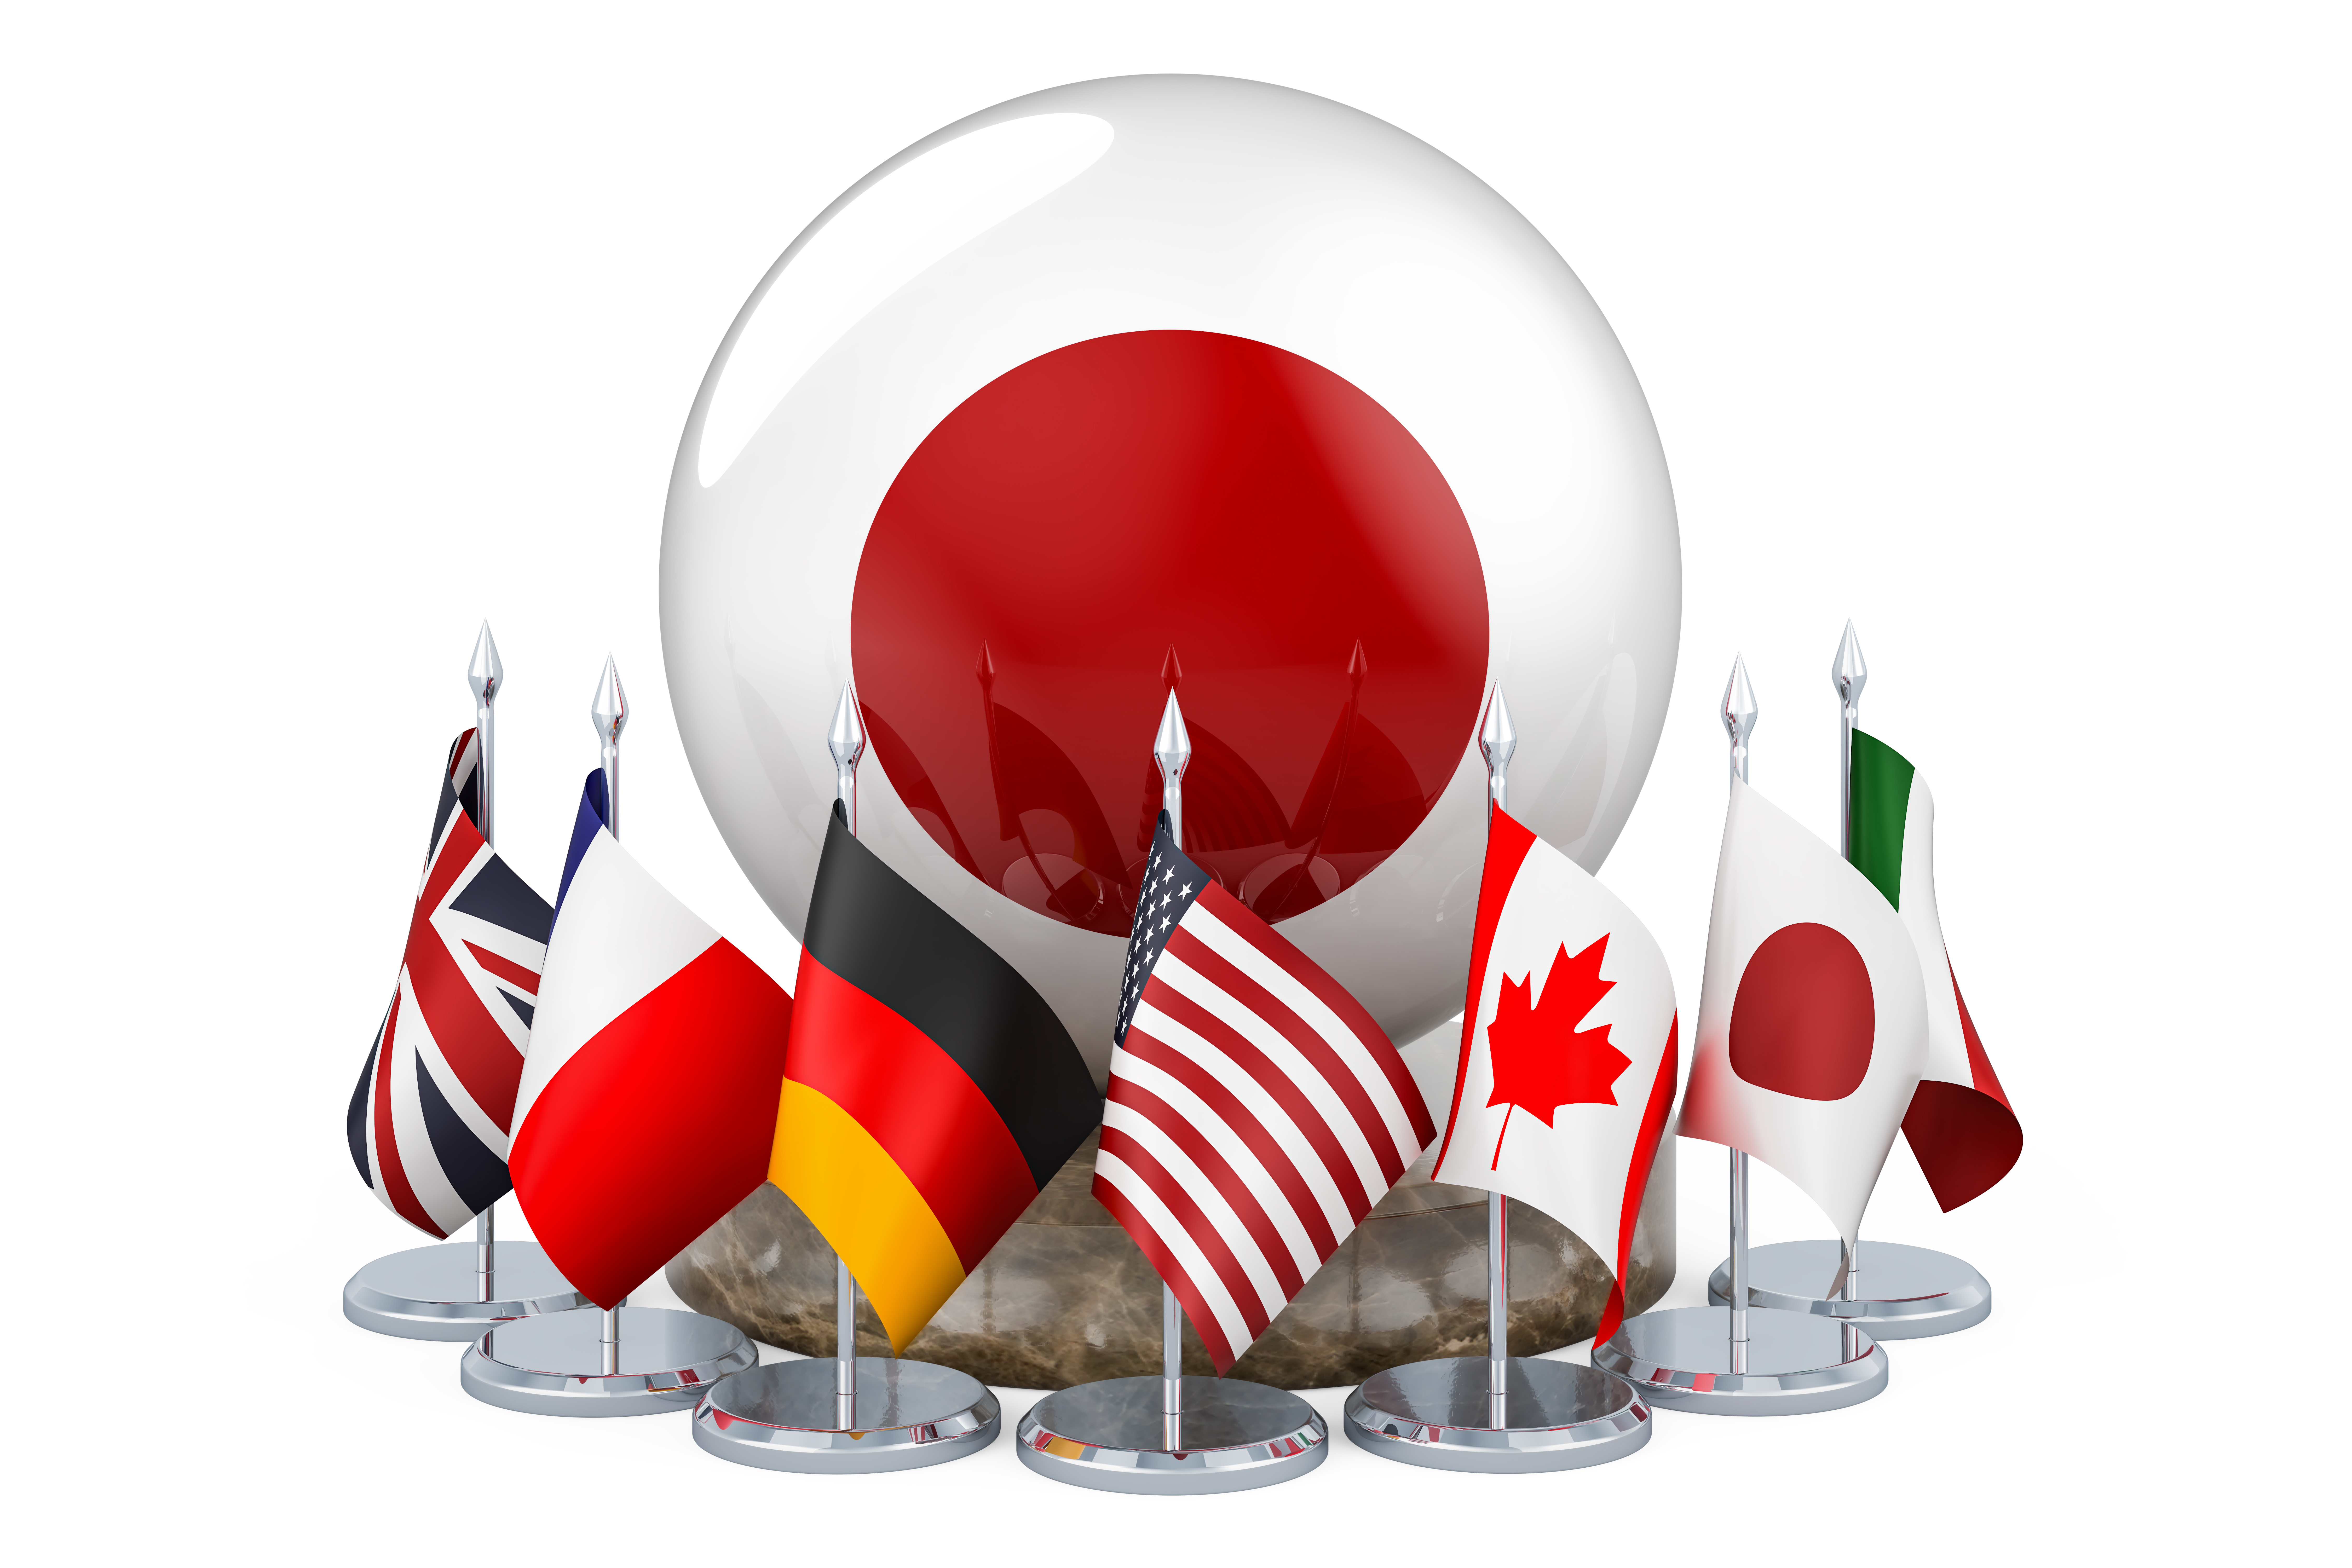 G7國家的旗幟圍繞著一個裝飾著日本國旗顏色的球體。